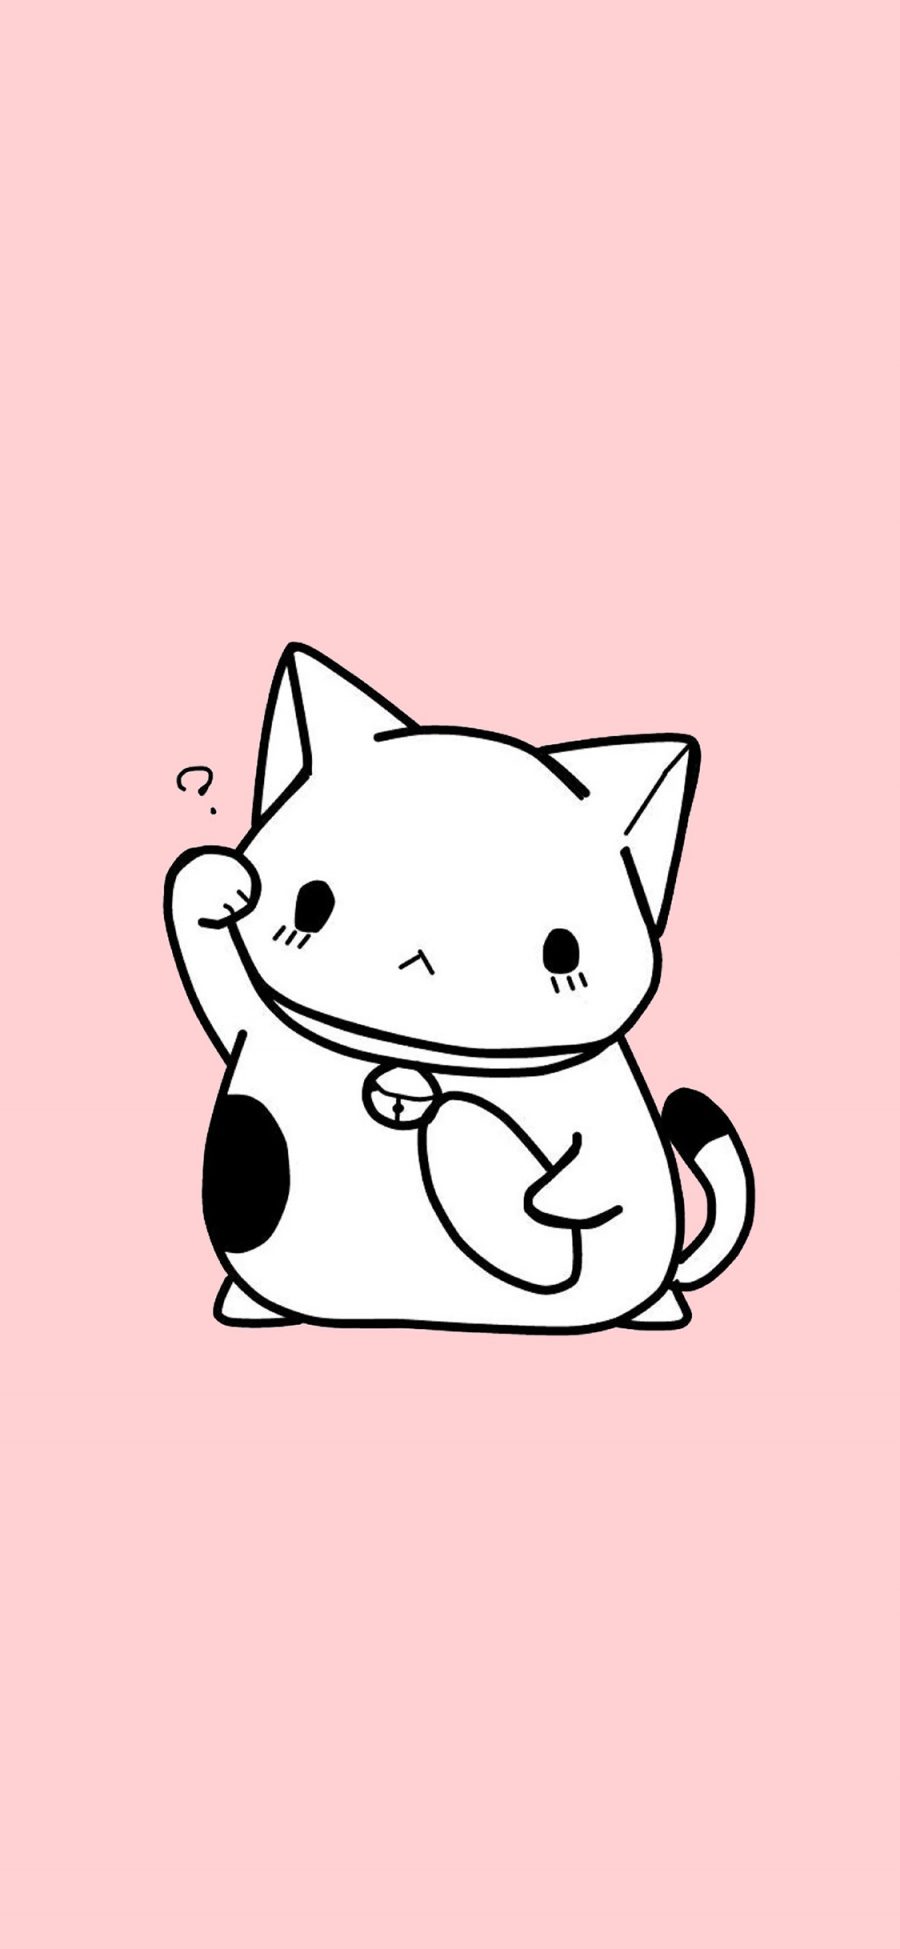 [2436×1125]猫咪 粉色 卡通 可爱 疑问 喵星人 苹果手机动漫壁纸图片